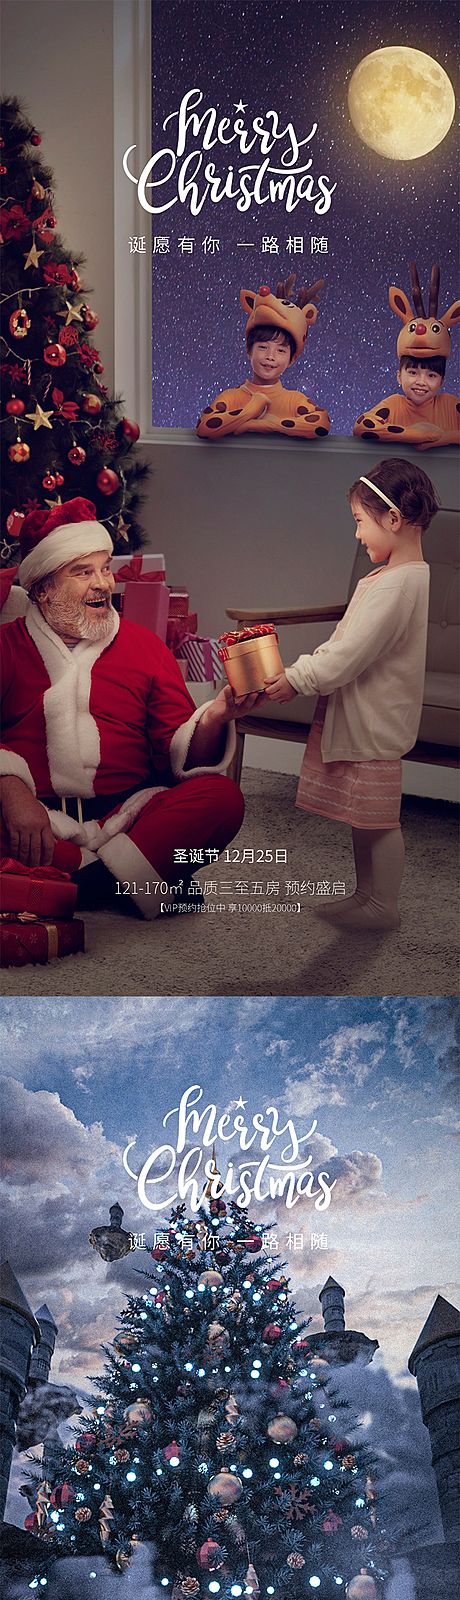 仙图网-圣诞节系列海报